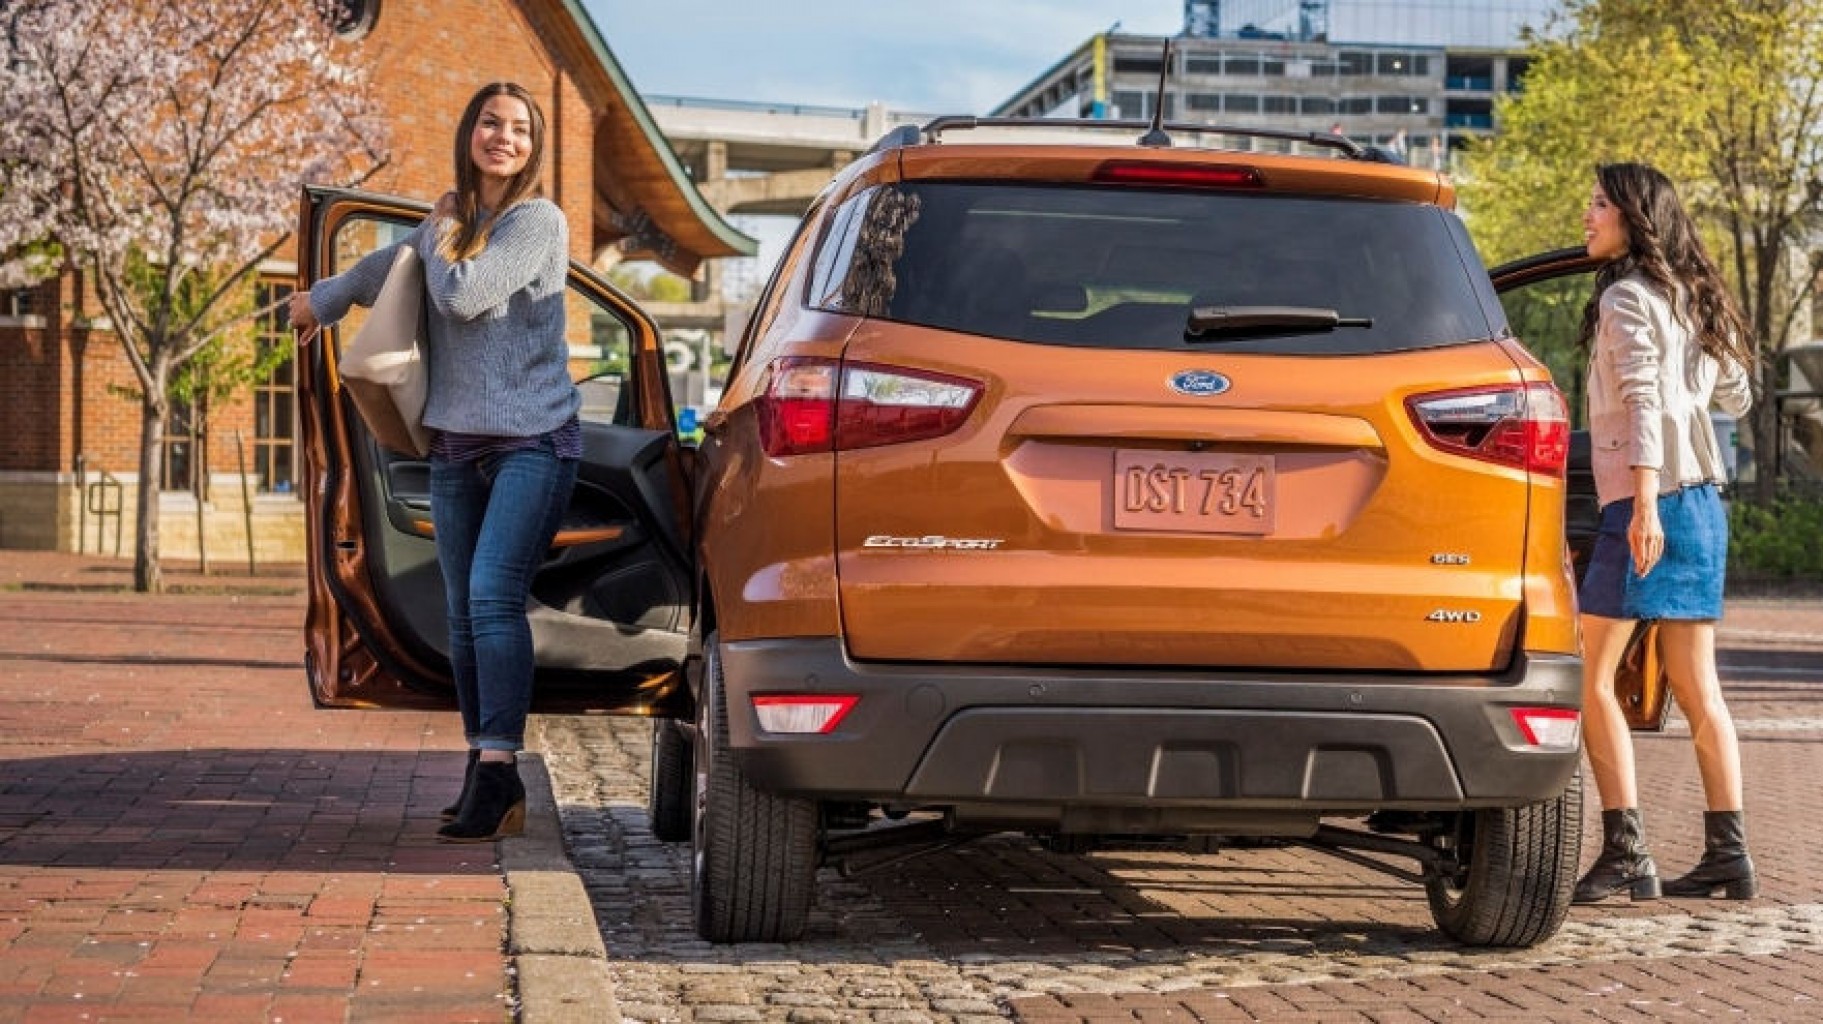 Porque el Ford Ecosport está comenzando a cautivar a la Generación Z?